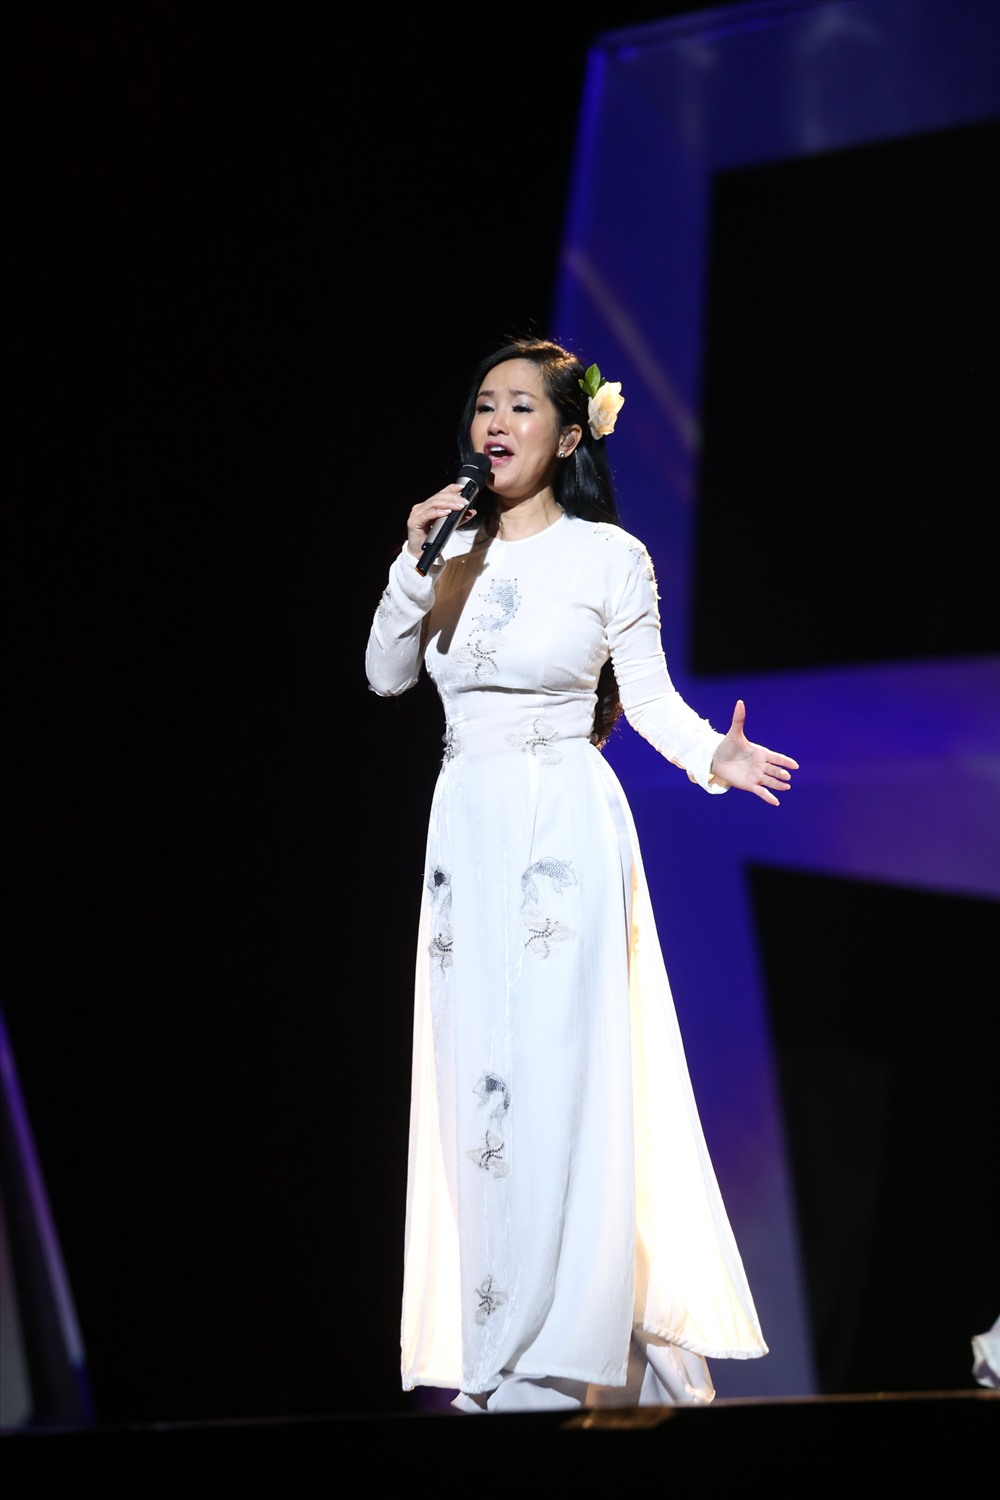 Diva Hồng Nhung lôi cuốn khán giả bằng khi hát đầy cảm xúc “Phố à, phố ơi!“. Ảnh: